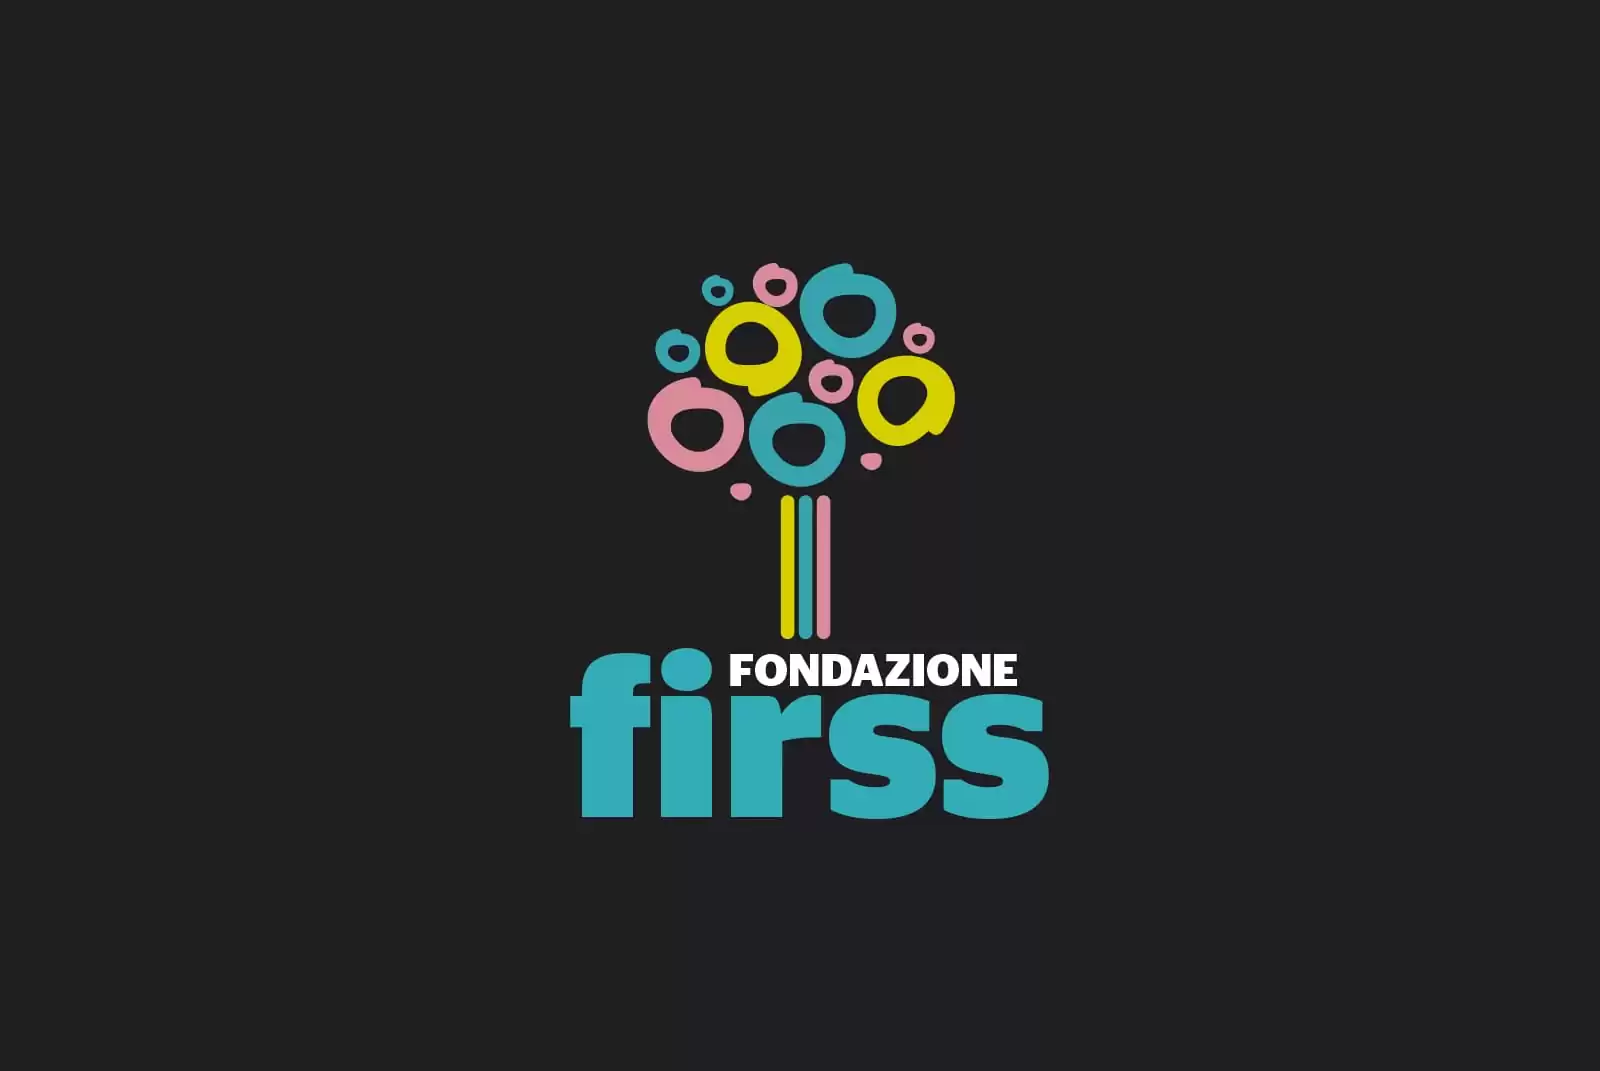 Fondazione-Firss-Logo-Design-by-Ottopiuotto